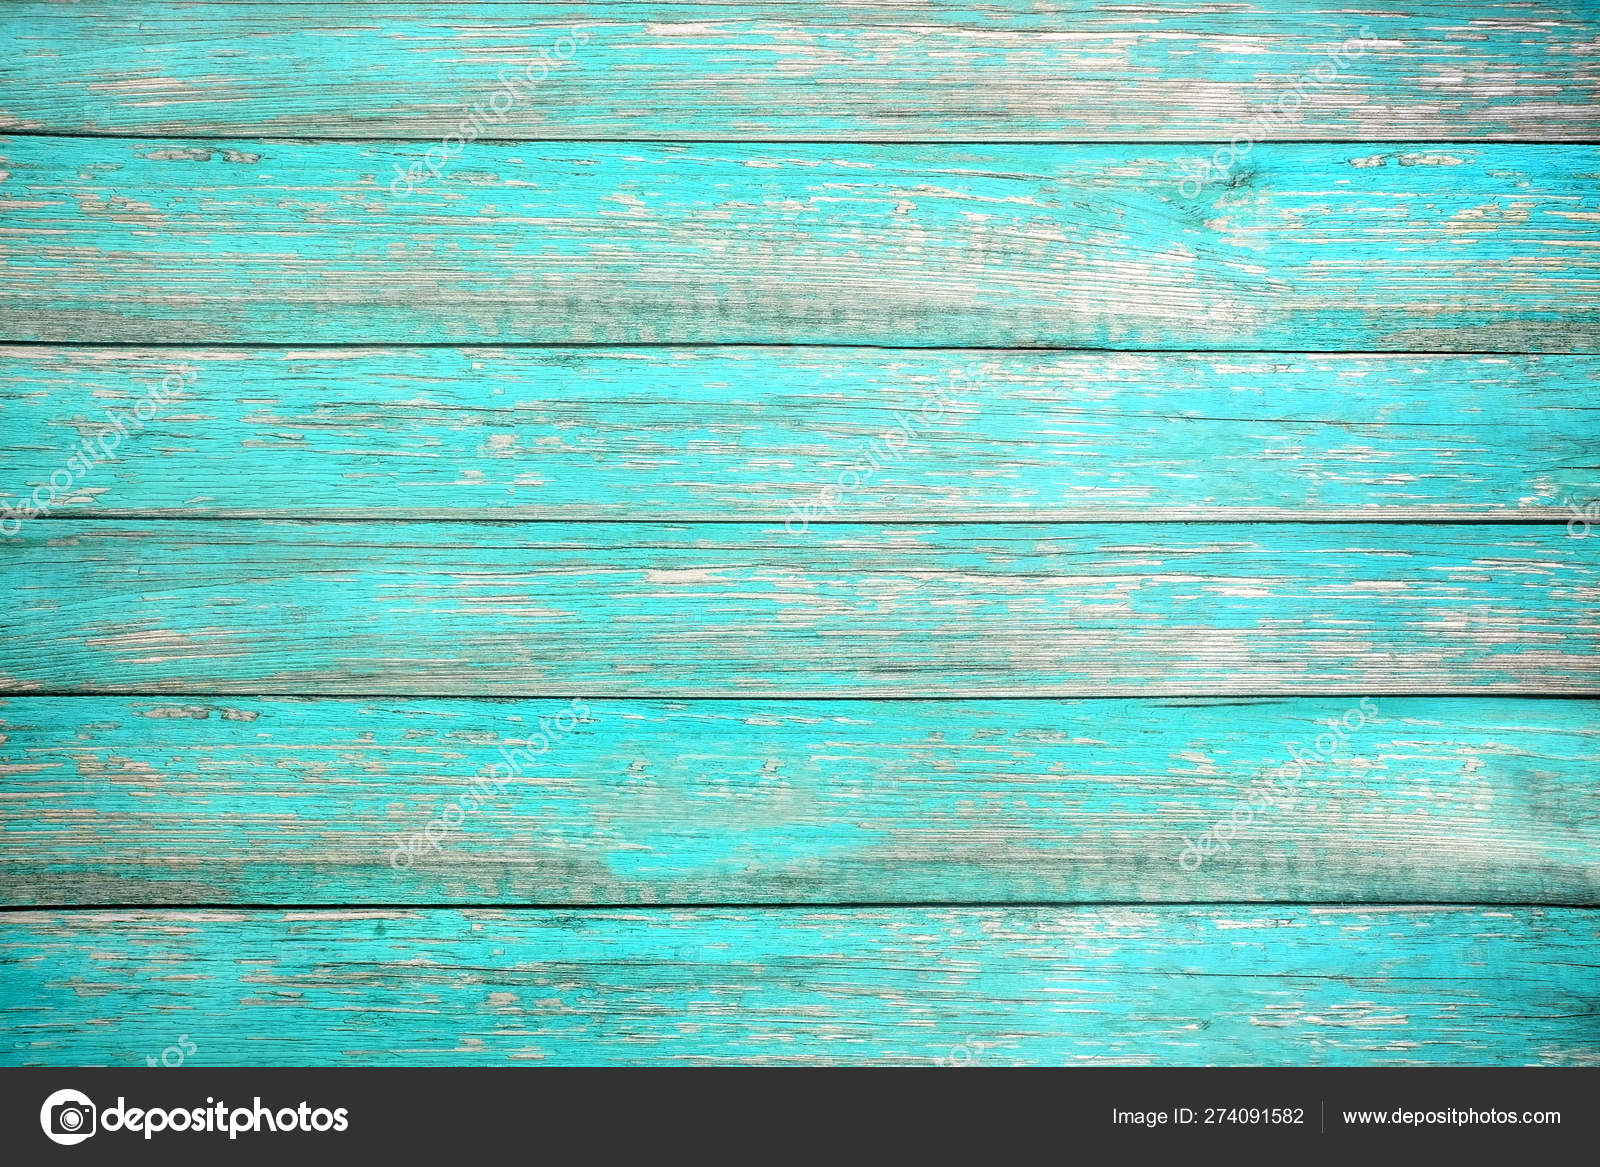 Bạn đang tìm kiếm một nền gỗ mang phong cách cũ kĩ, được sơn màu trắng biển? Hãy tìm hiểu về nền gỗ độc đáo này, được làm từ những tấm ván gỗ mài mòn và sơn lại. Hình ảnh của bạn sẽ trở nên sống động và thú vị hơn nếu được đặt trên nền gỗ tuyệt đẹp này.